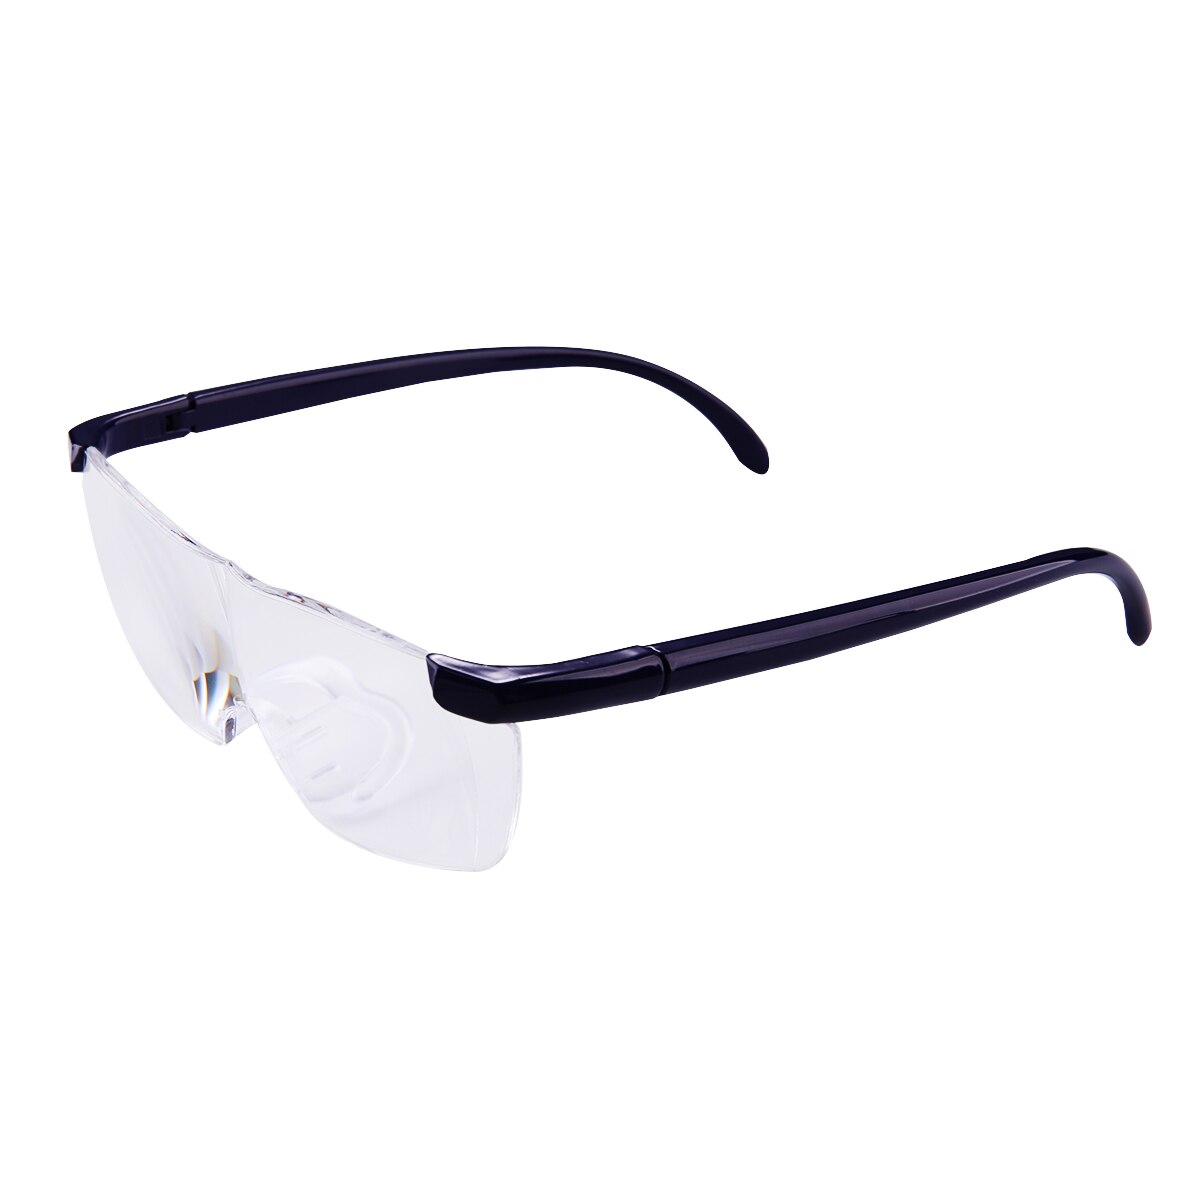 Iboode forstørrelsesglas 1.6 gange forstørrelsesglas 250- graders presbyopisk briller forstørrelsesglas briller bærbare forældre: Blå